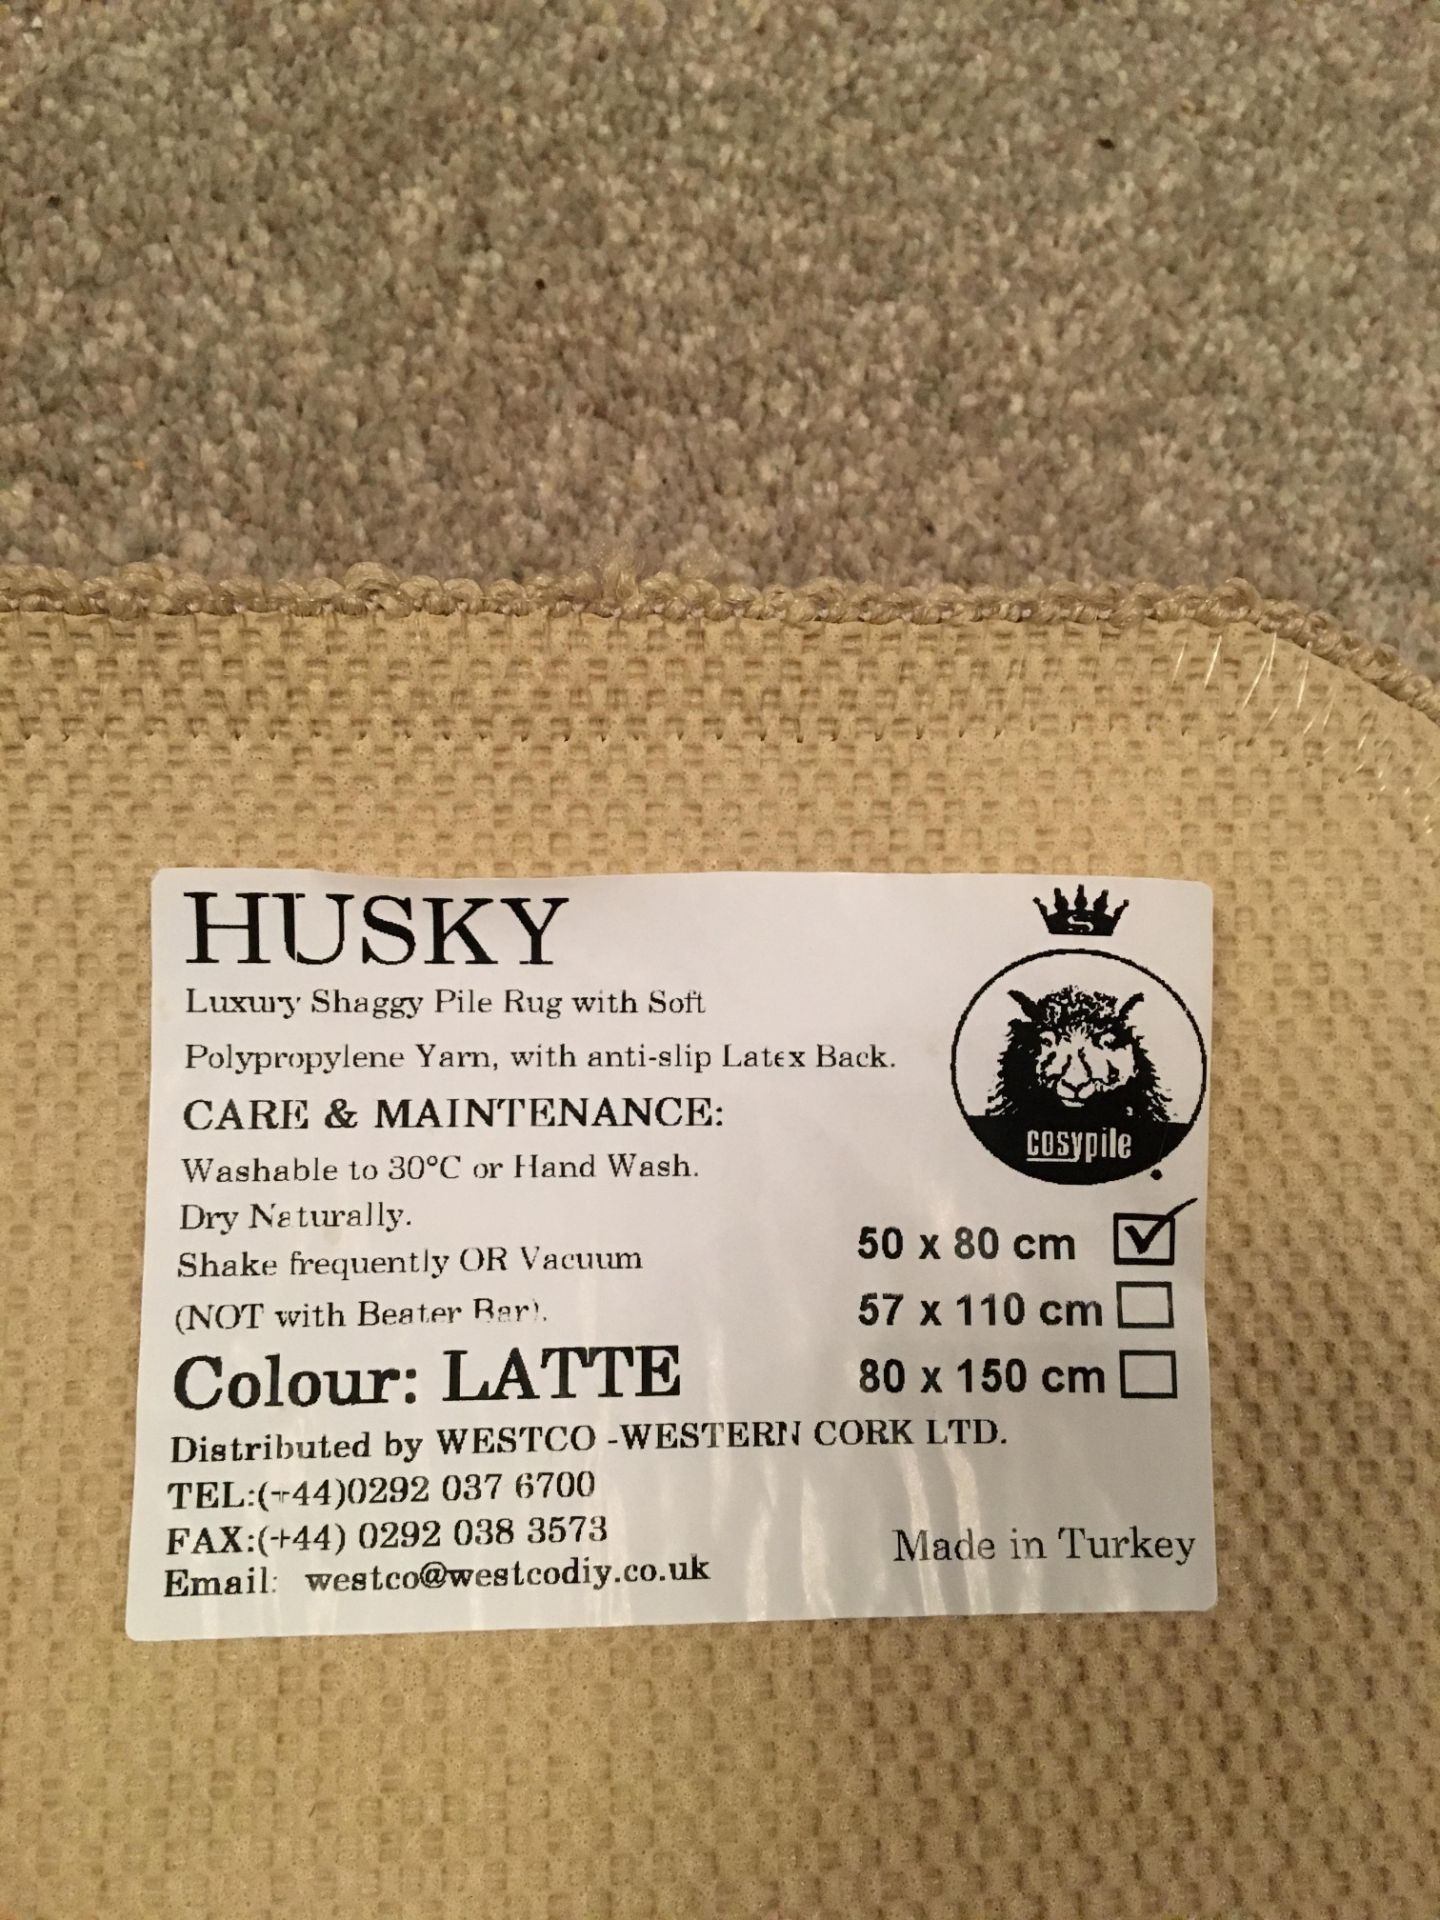 60x Husky Luxury Shaggy Pile Rug (50cm x 80cm) - Image 3 of 3